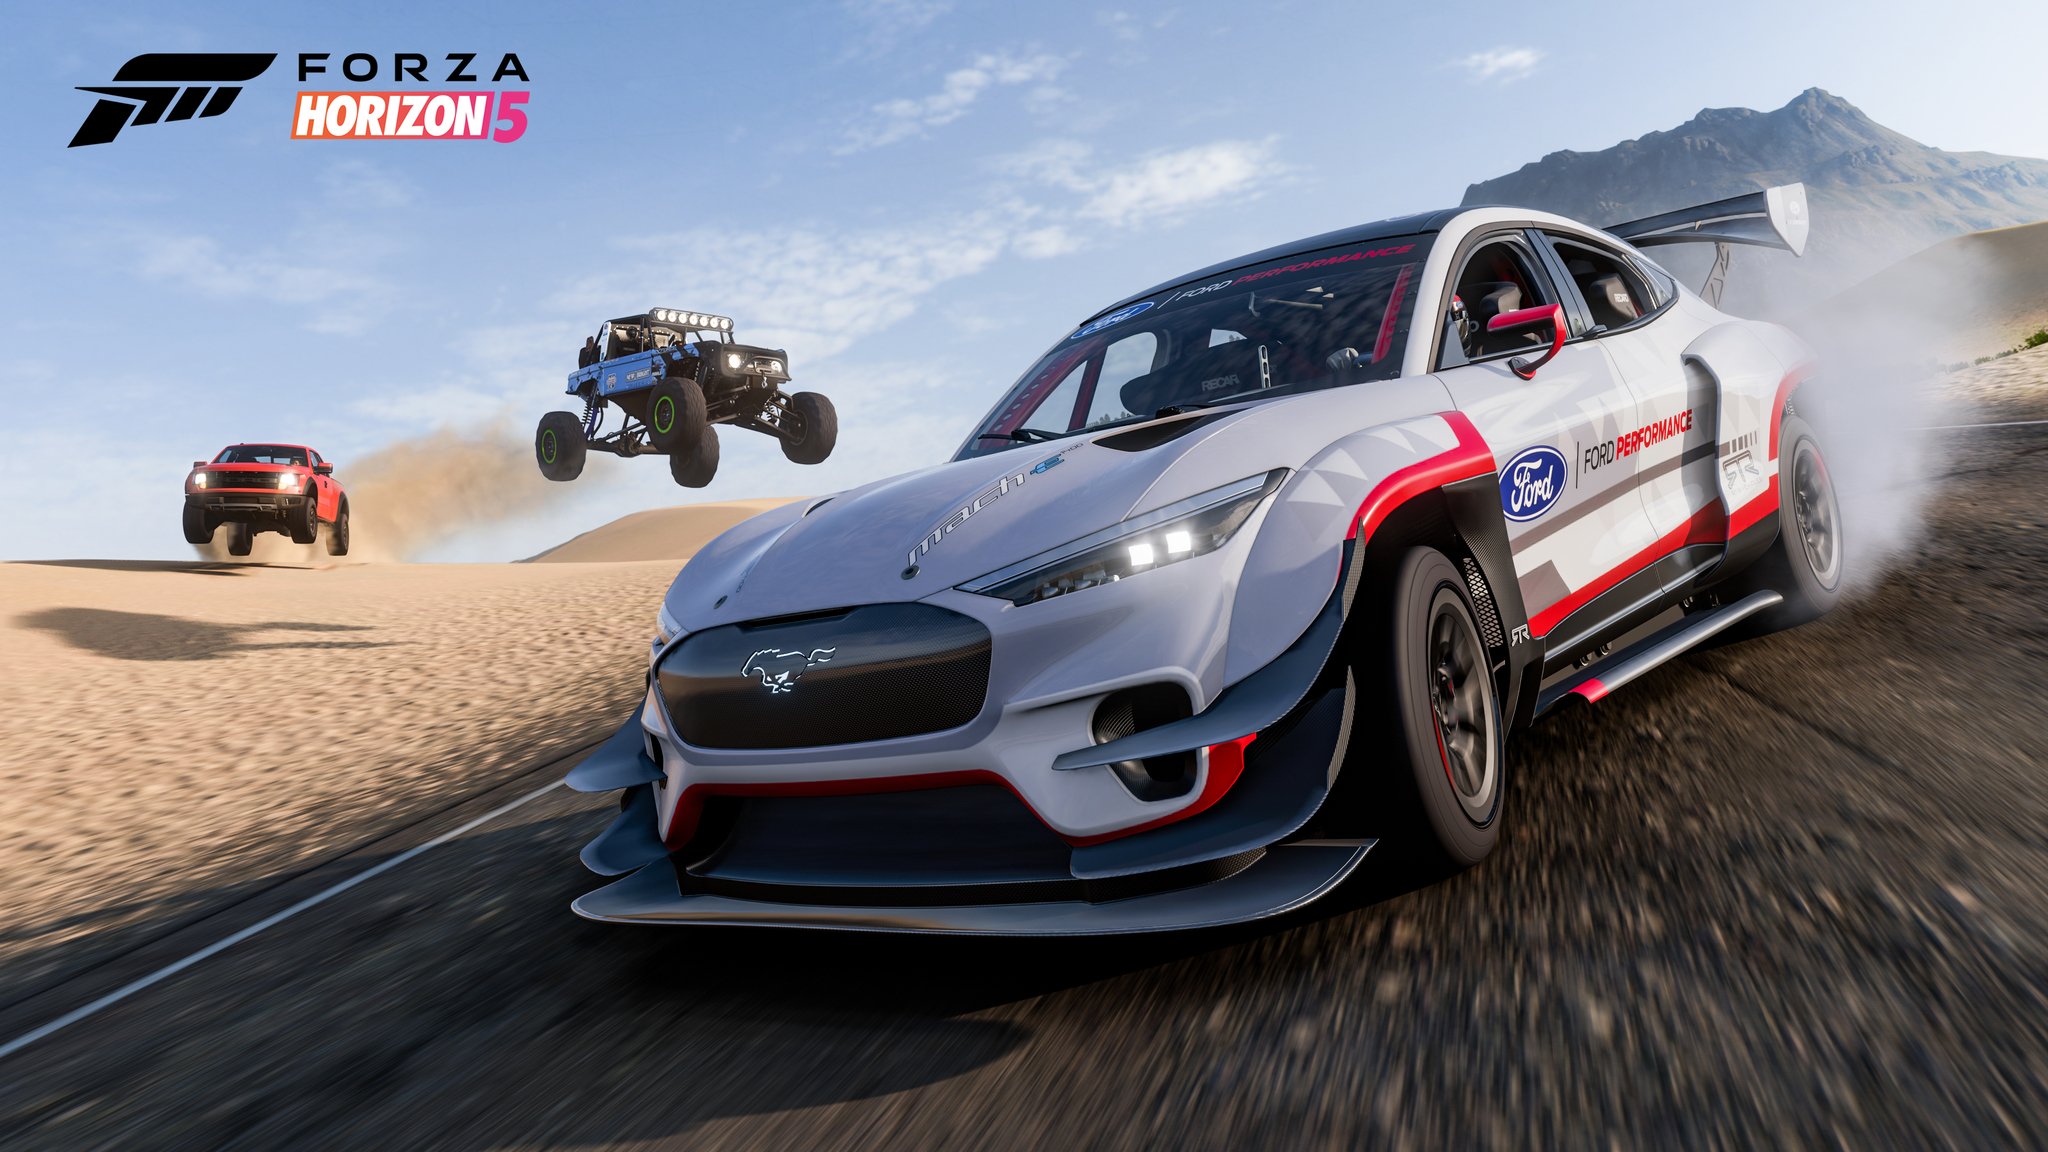 Вышло обновление Forza Horizon 5 Series 6 с новыми автомобилями, значительными улучшениями в сетевых гонках и многим другим.